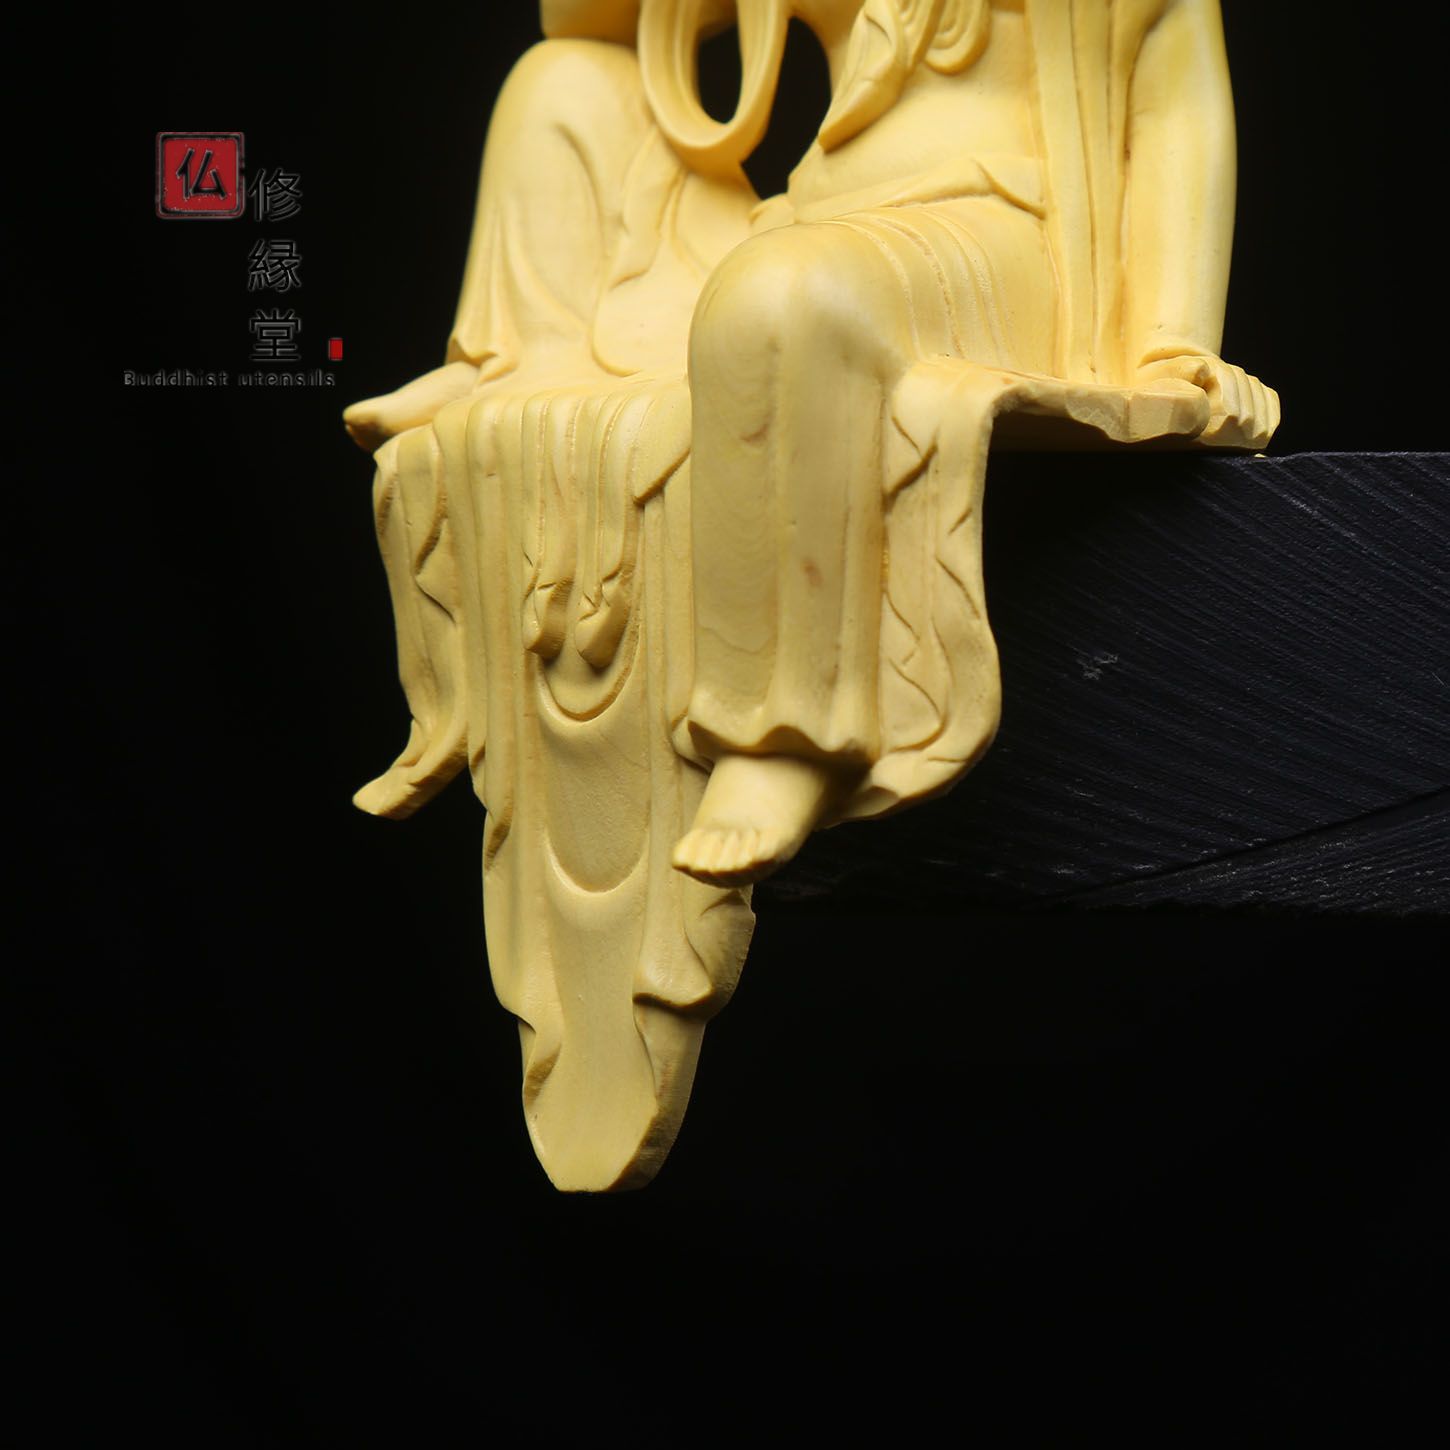 修縁堂】木彫り 仏像 自在観音座像 観音菩薩 柘植材 仏教工芸 精密彫刻